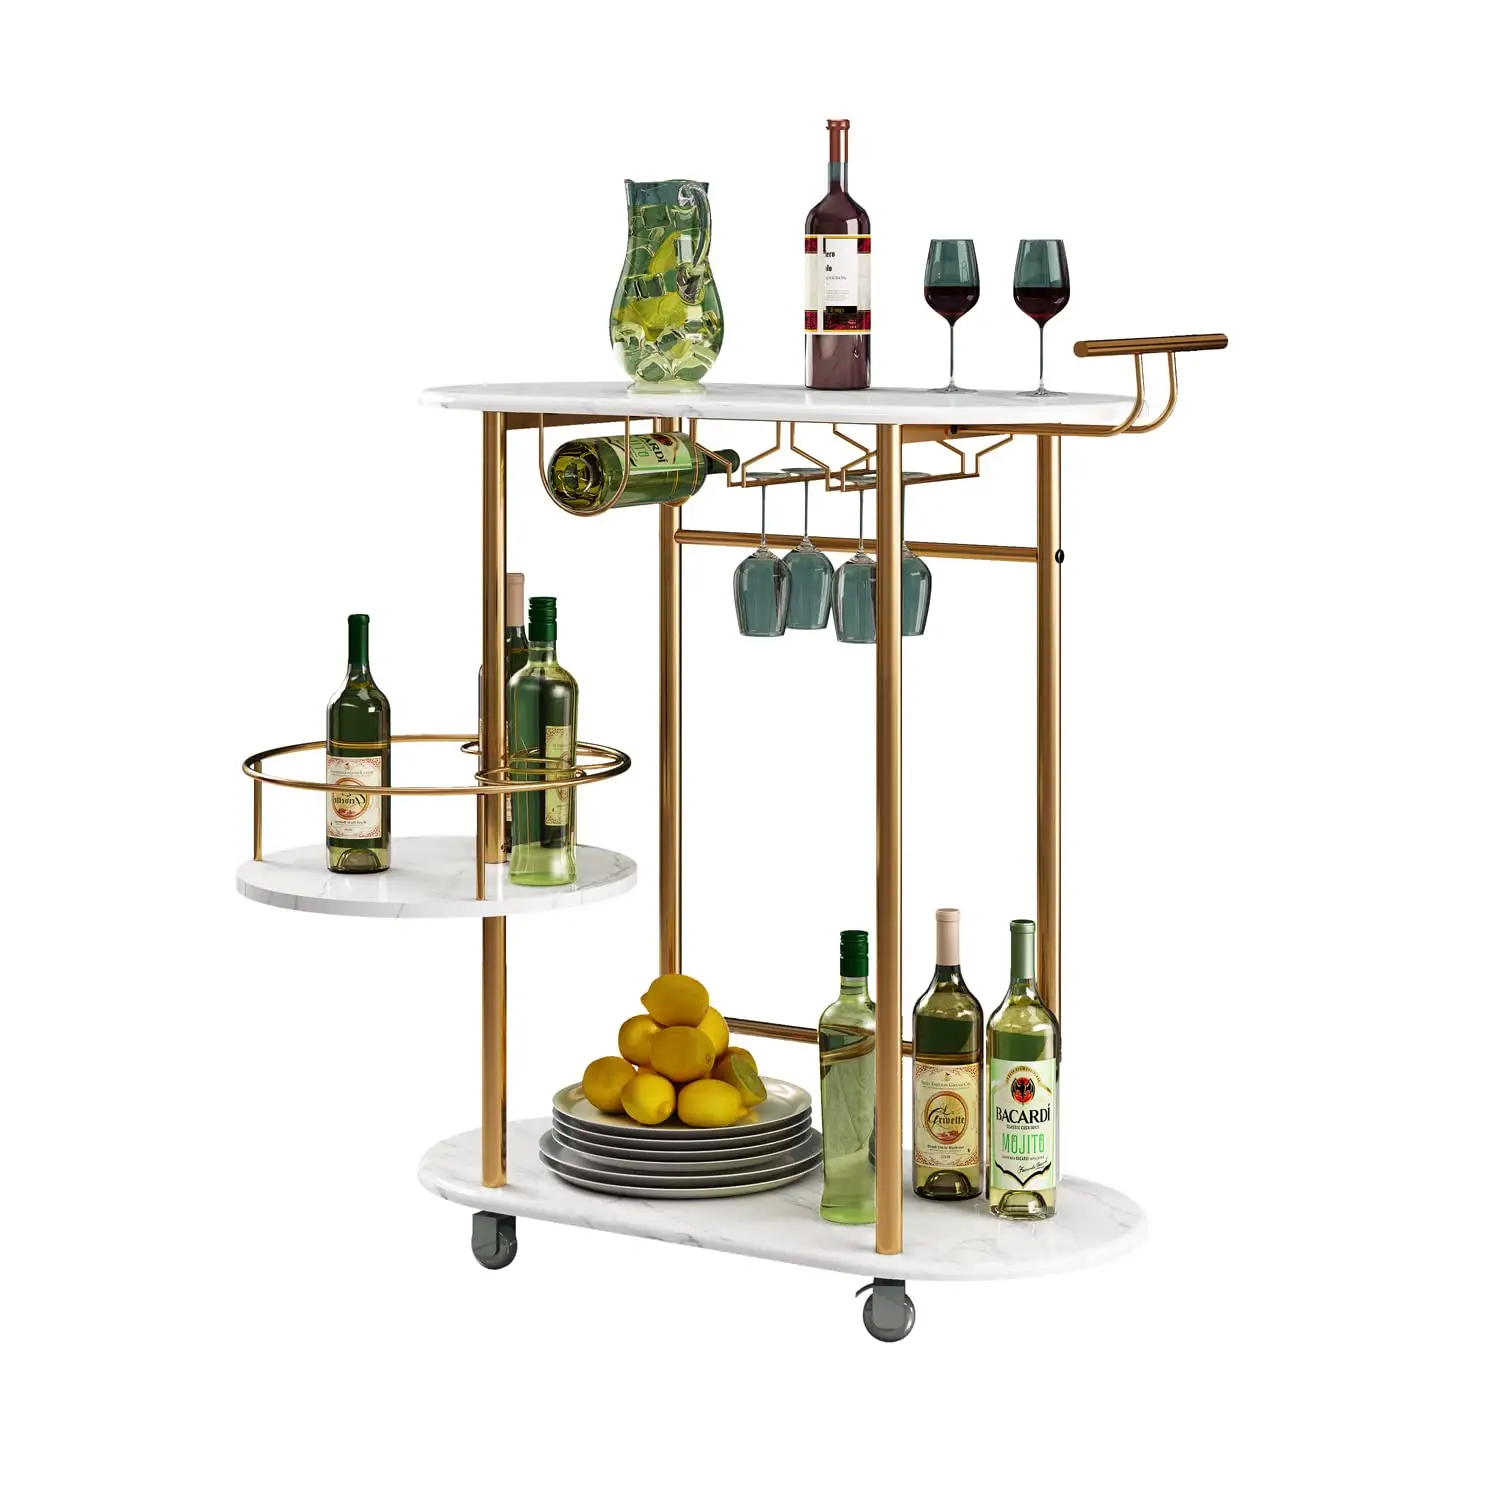 Carrinhos de barras de ouro com prateleiras giratórias de 3 camadas, carrinho de servir bar móvel com suporte para vinho e suporte de vidro, para o lar